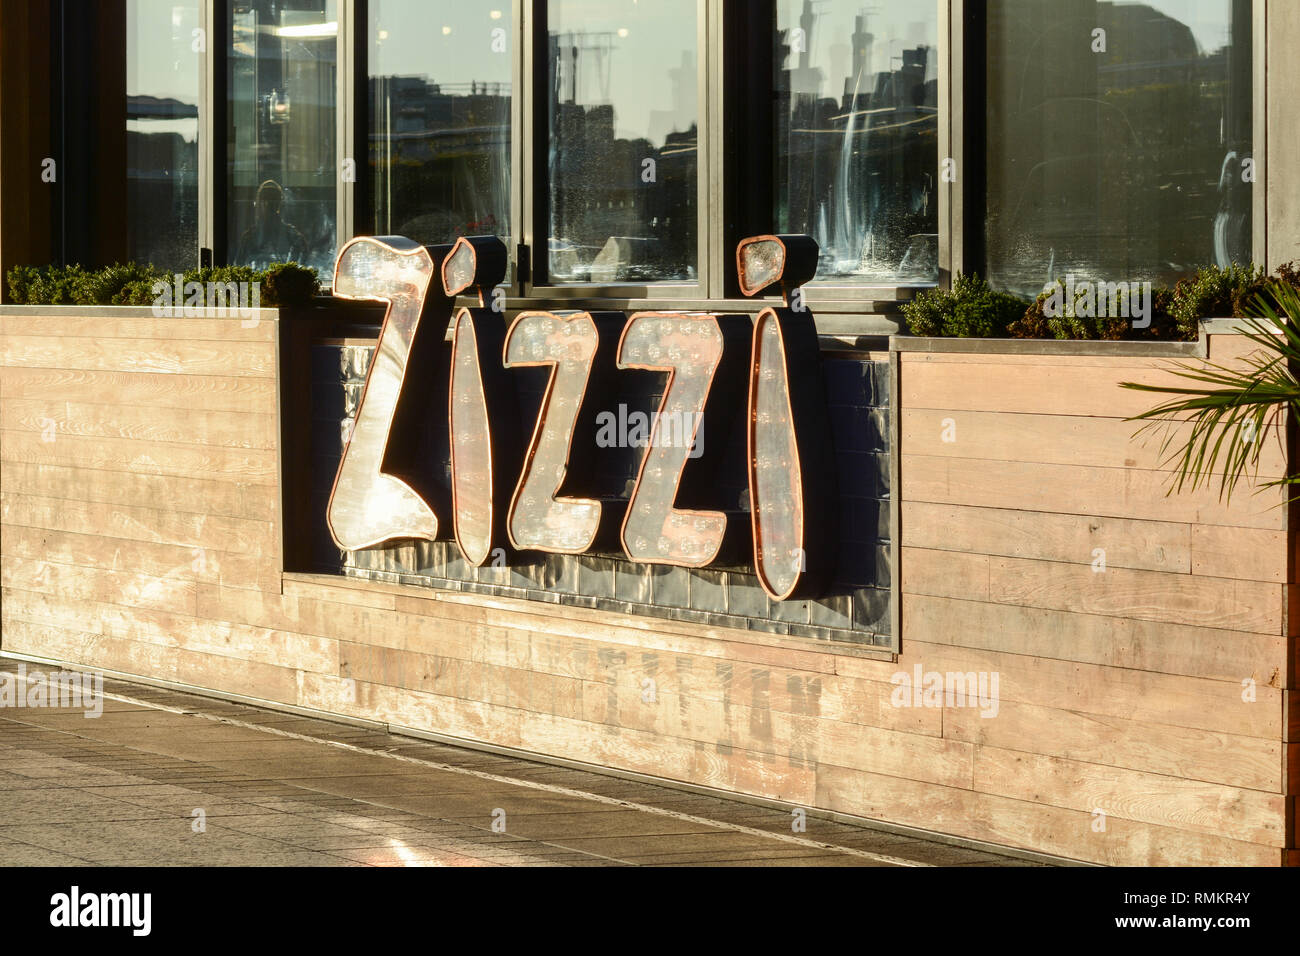 Los carteles fuera de la cadena Zizzi restaurante italiano en el centro comercial Westfield London, Ciudad Blanca, Londres, Reino Unido. Foto de stock